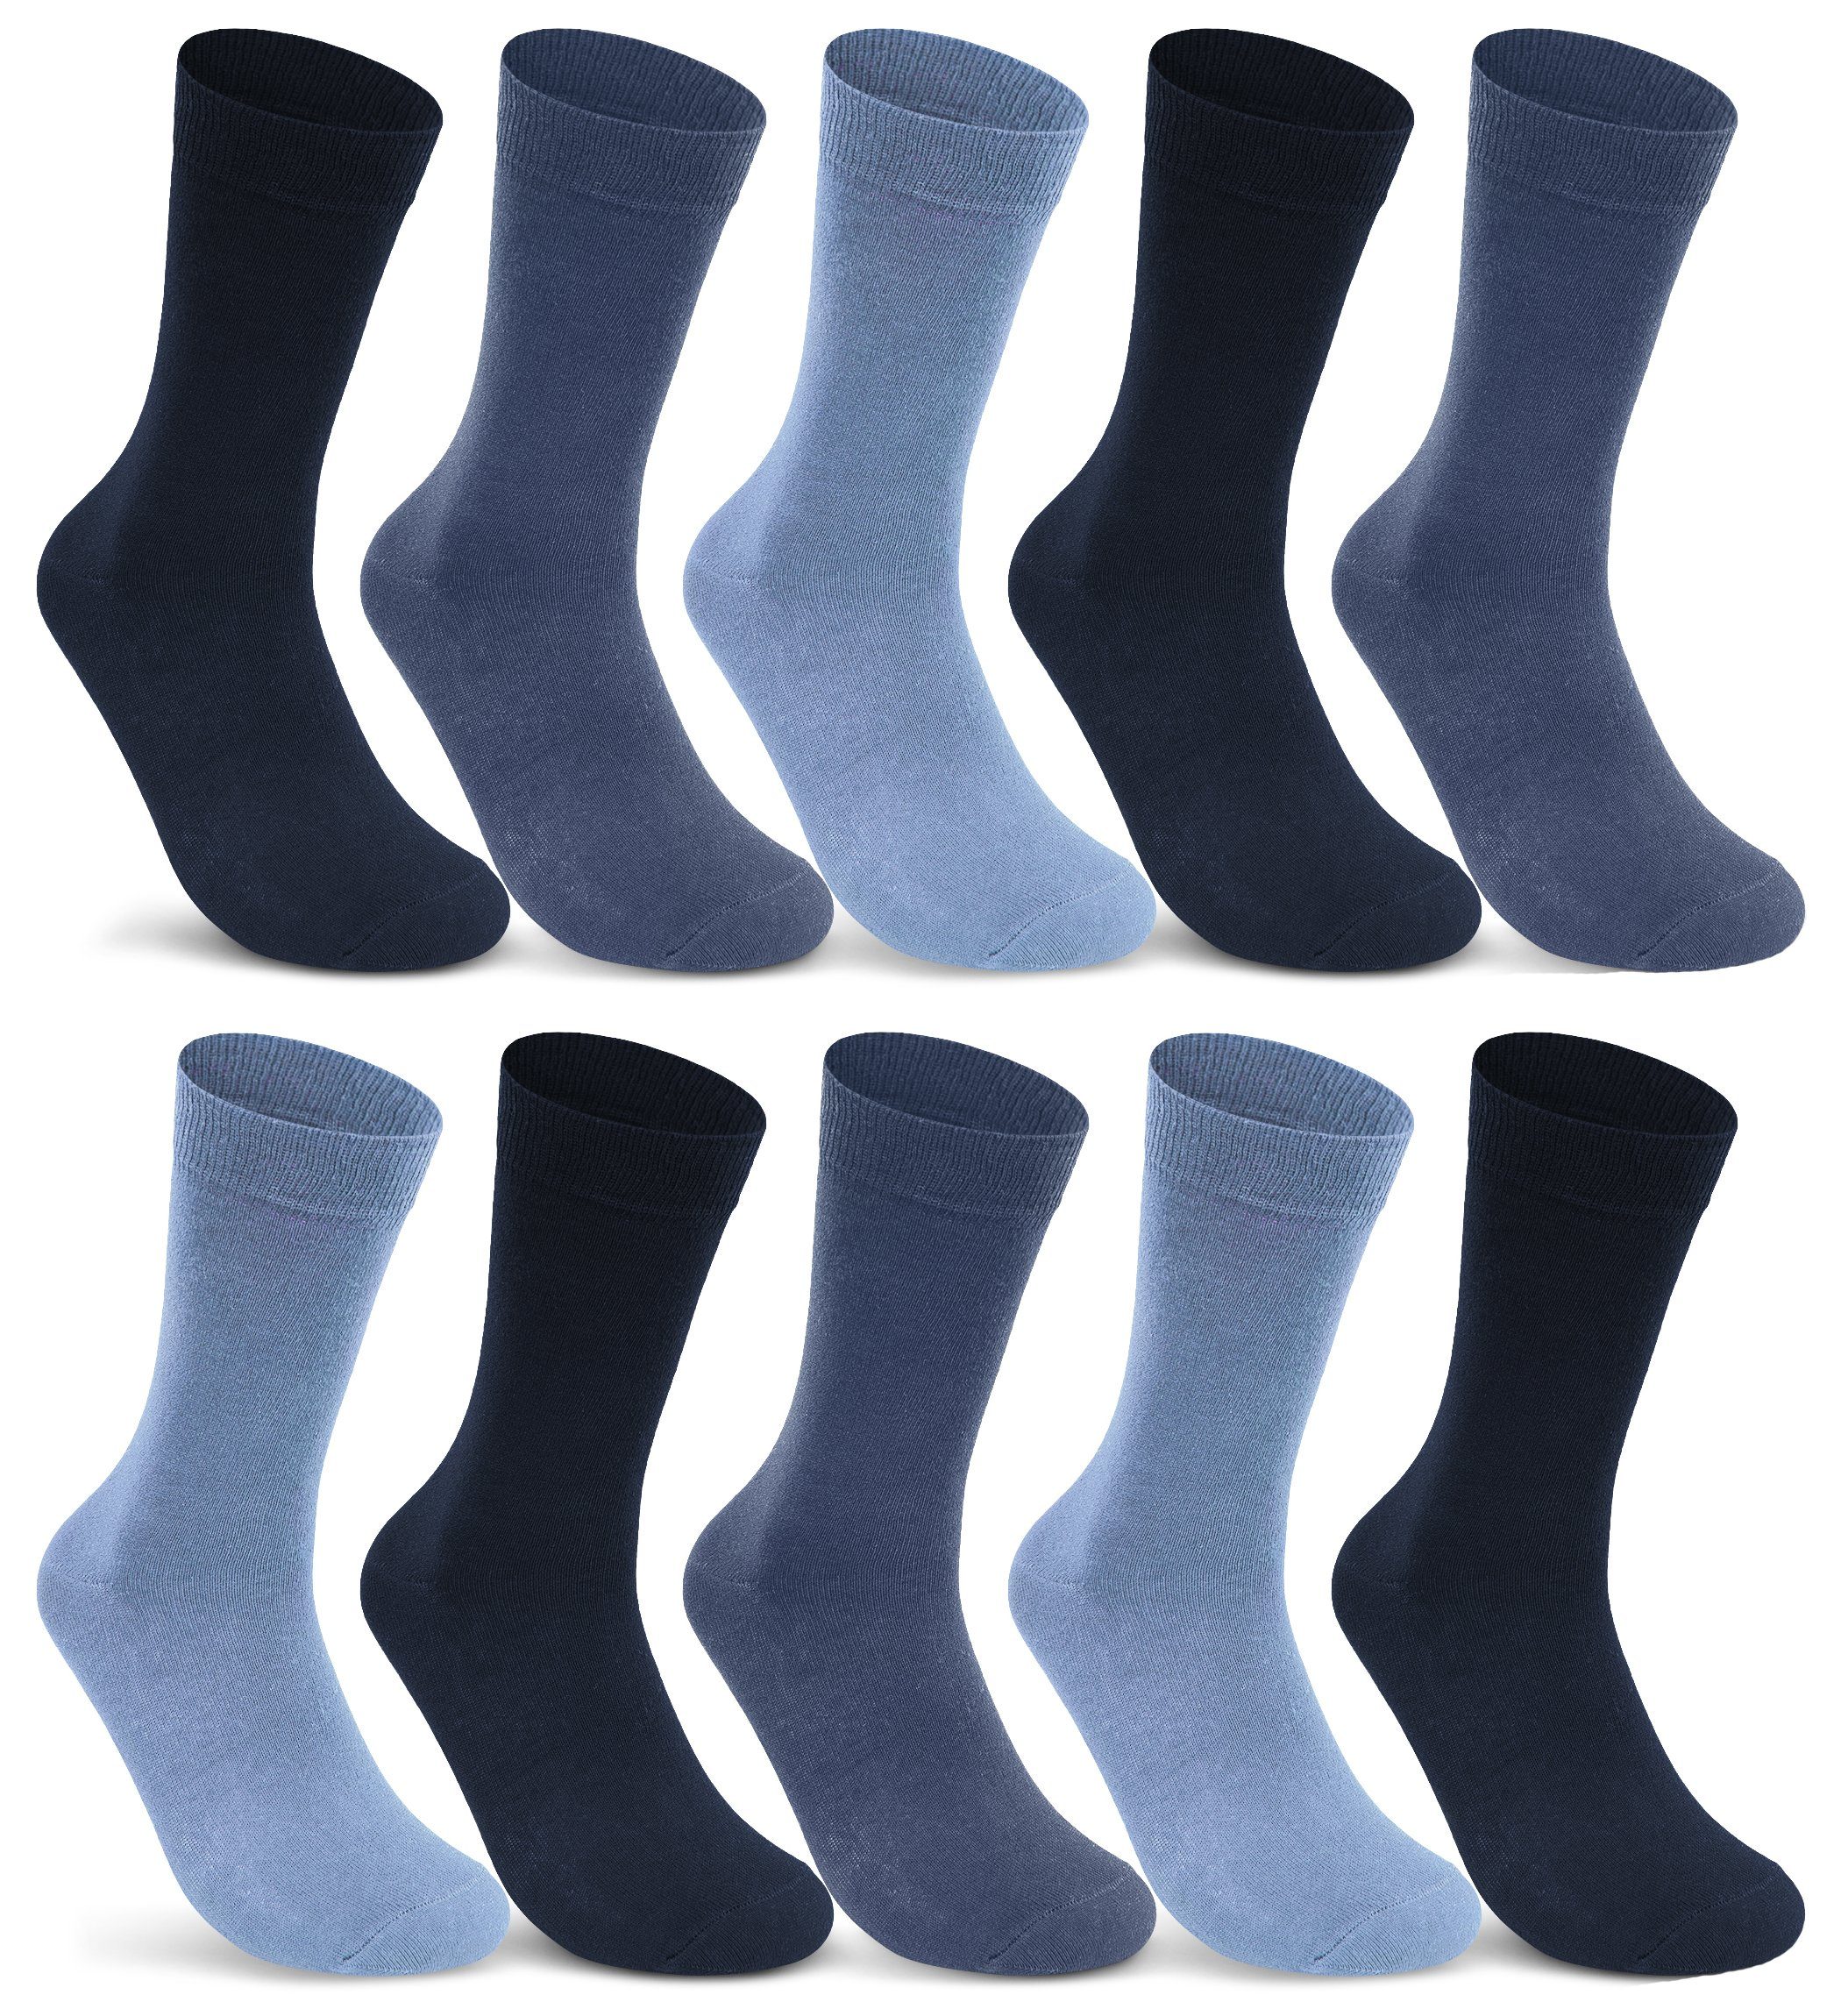 sockenkauf24 Socken Damen Jeans-Navy-Blau & 10-Paar, Blau, 10700 I Paar - 43-46) Baumwolle Business 20 10 Navy, mit WP Komfortbund I (Jeans, Herren 30 Strümpfe Socken